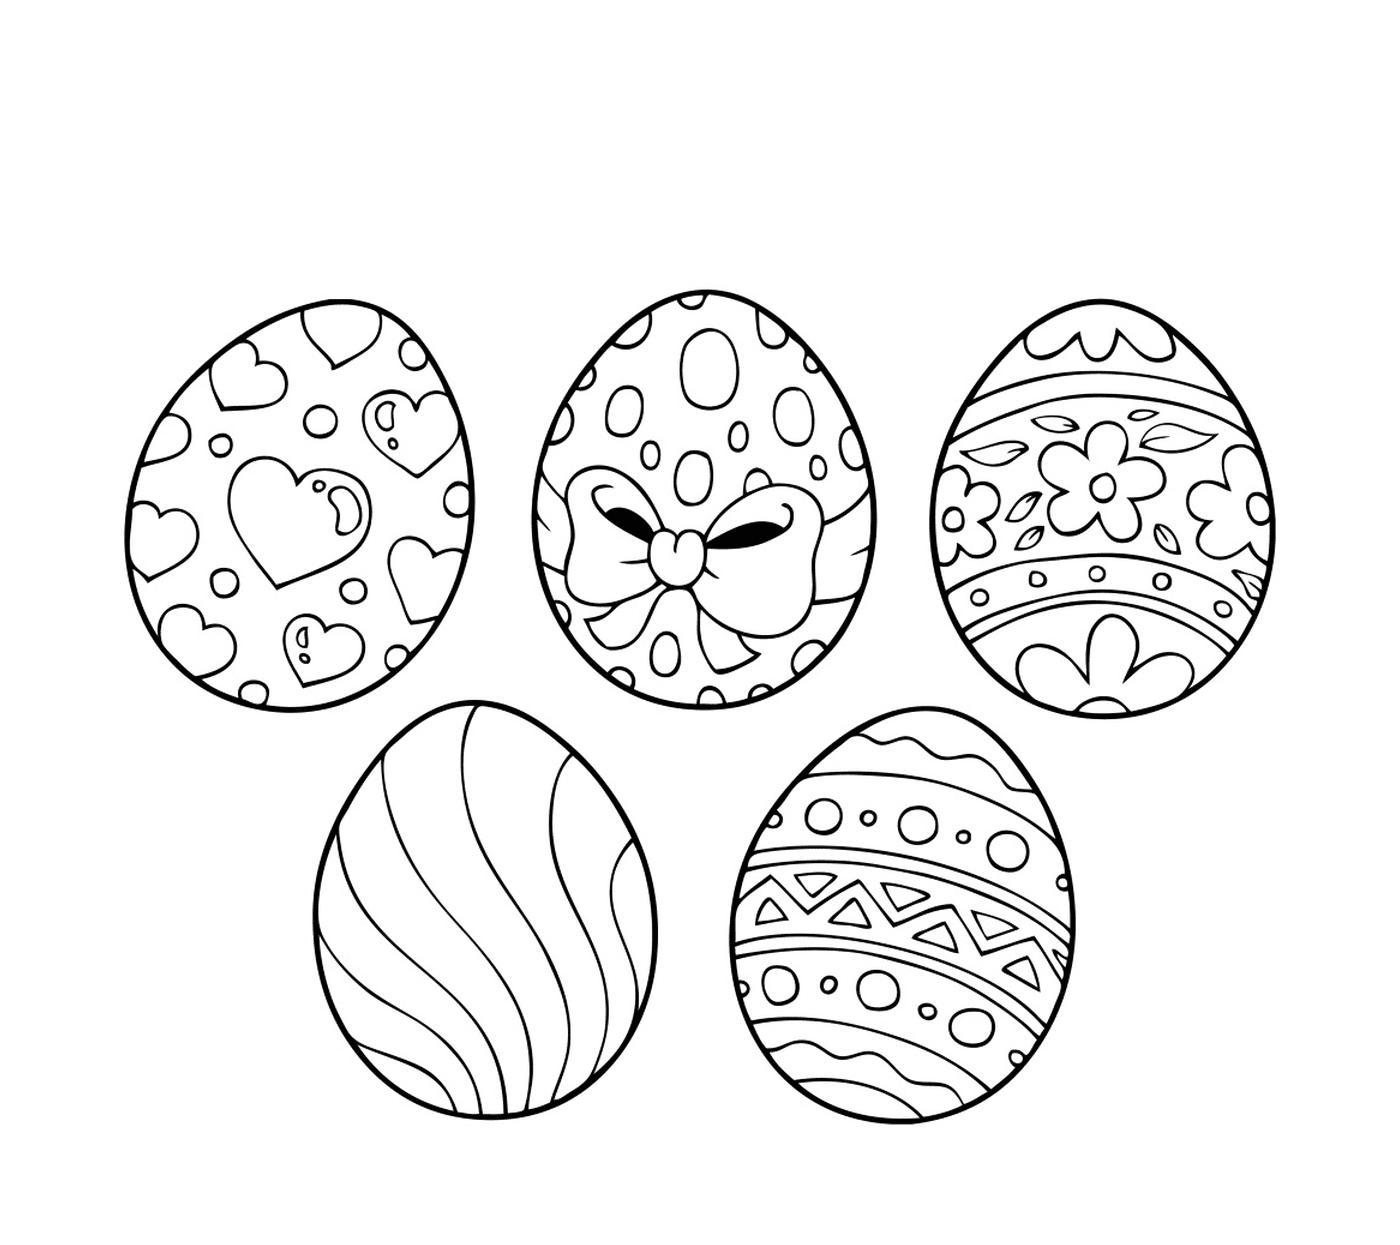  Uova di Pasqua 2017, un set di uova di Pasqua decorate con diversi modelli 